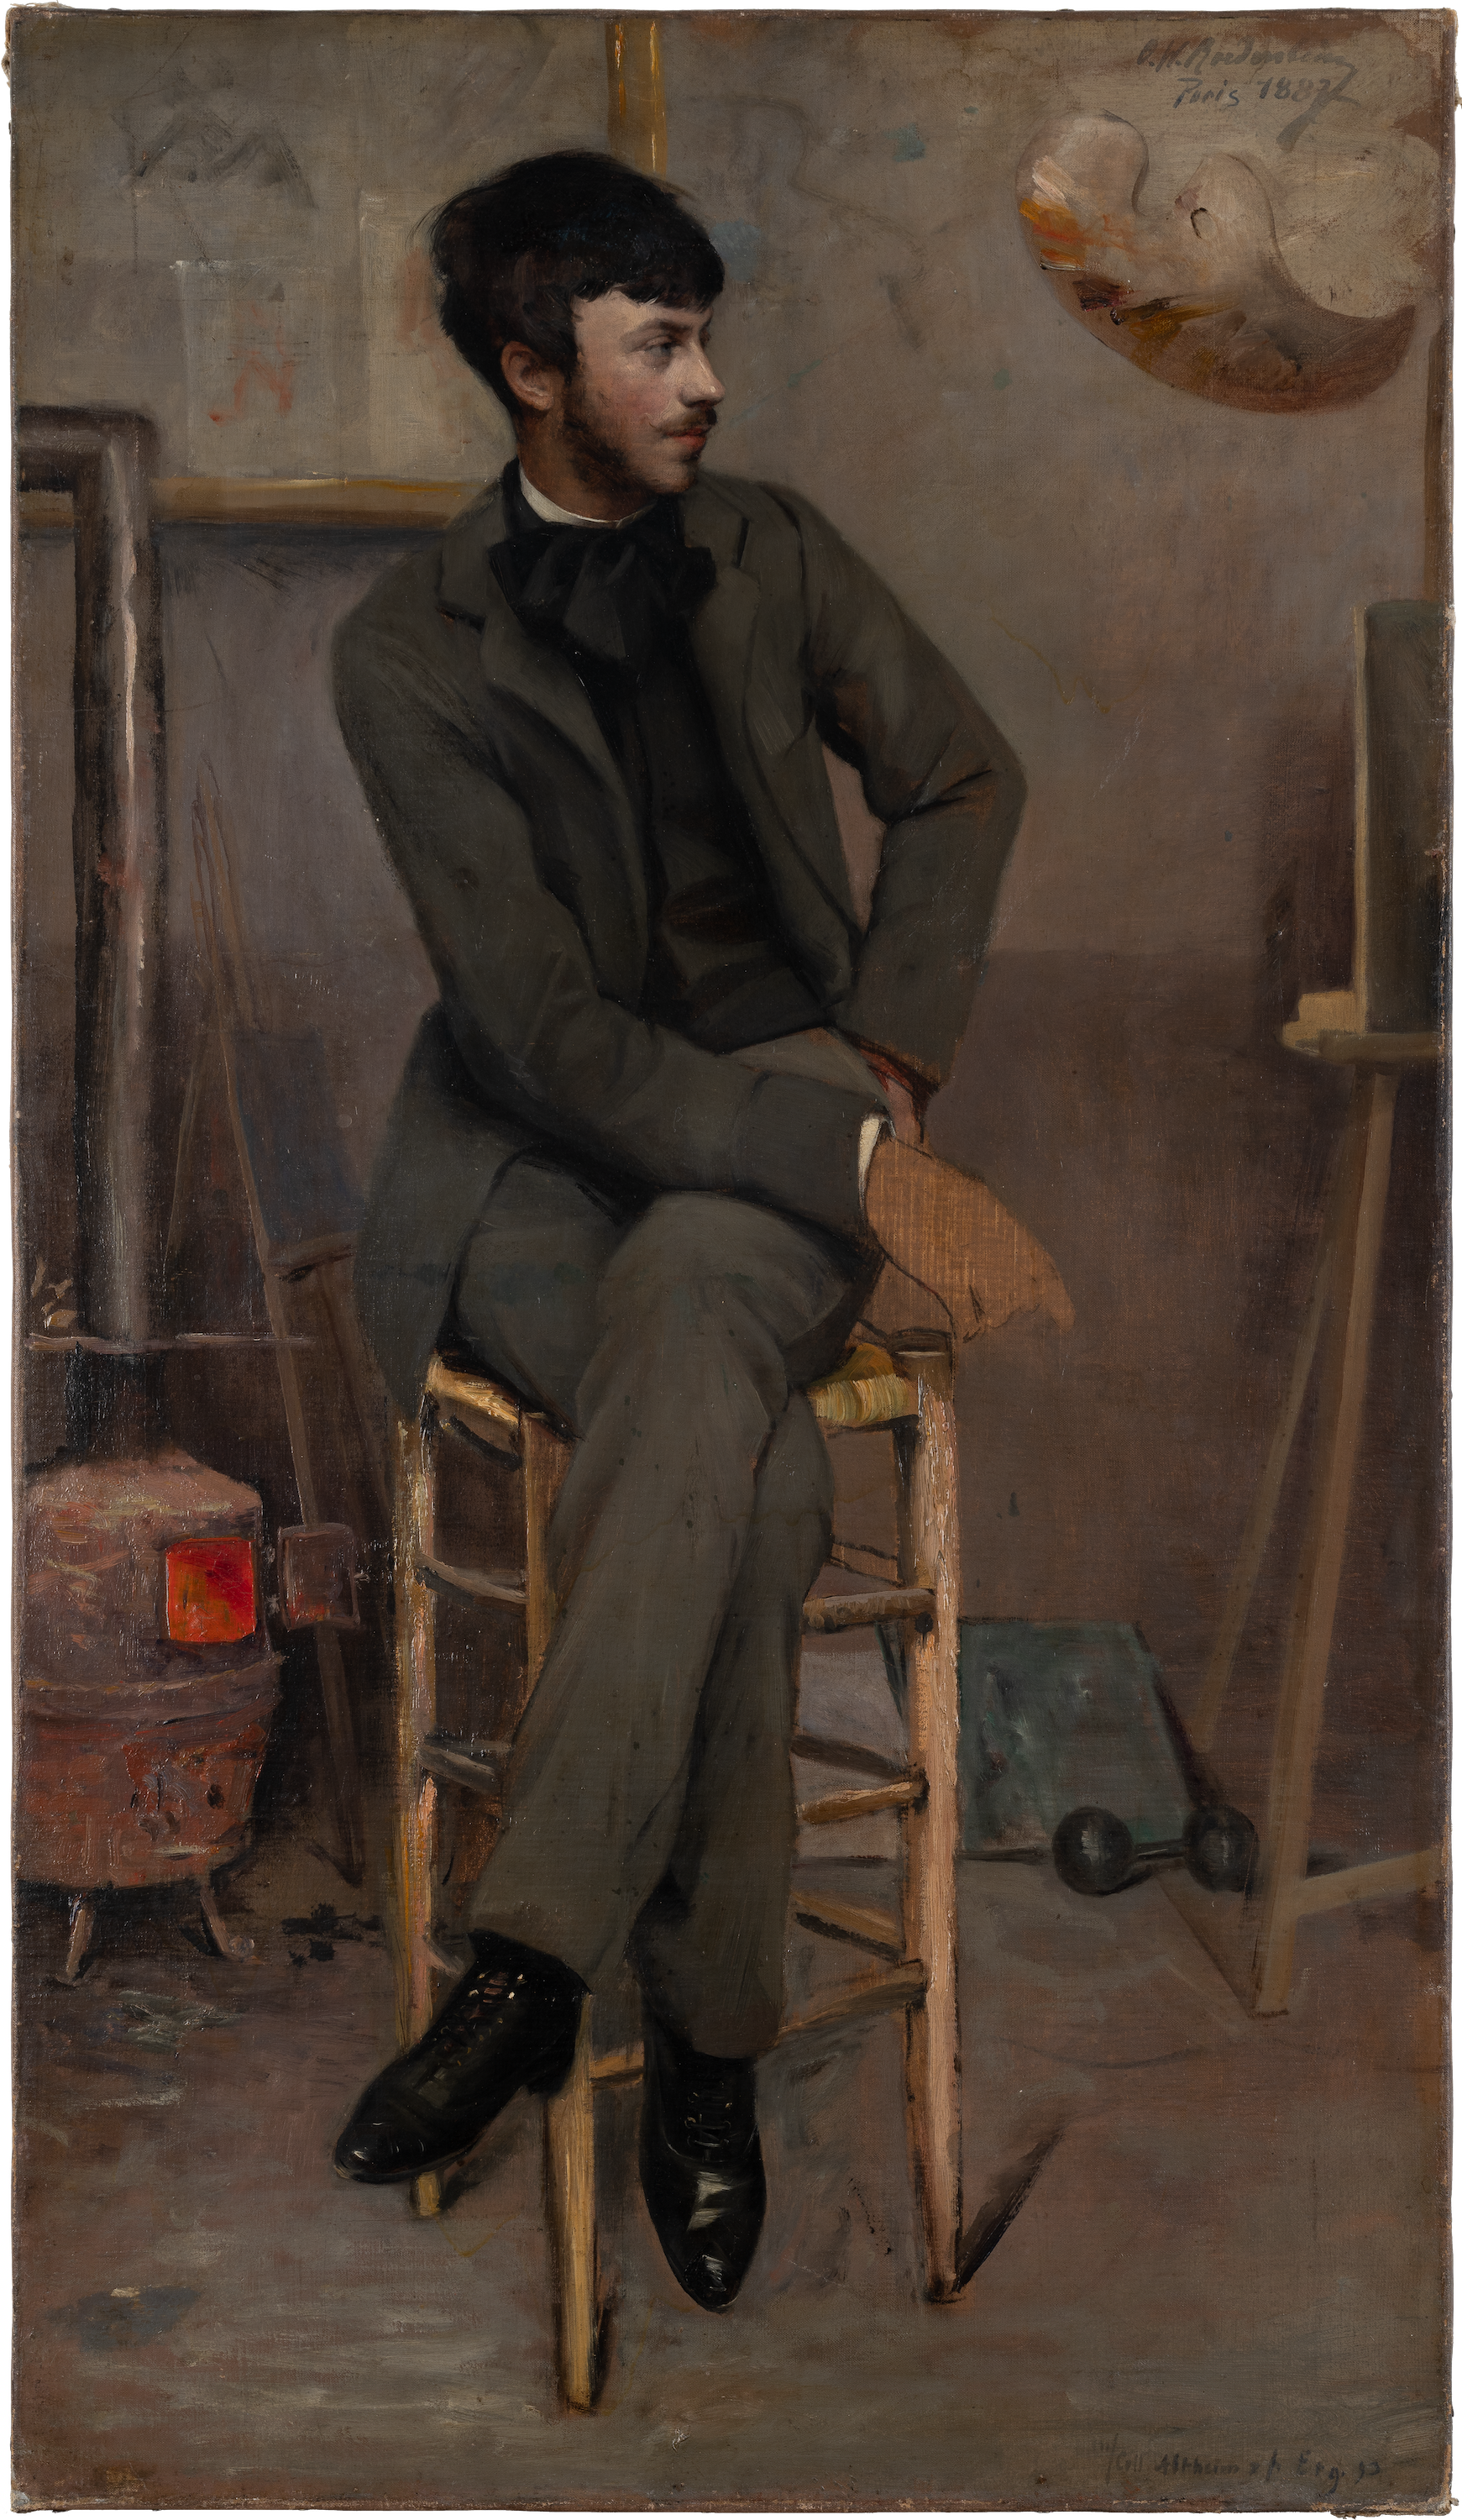 بورتريه لرسام في مرسم باريسي by Ottilie W. Roederstein - 1887 م - 86.1 في 49.5 سم 